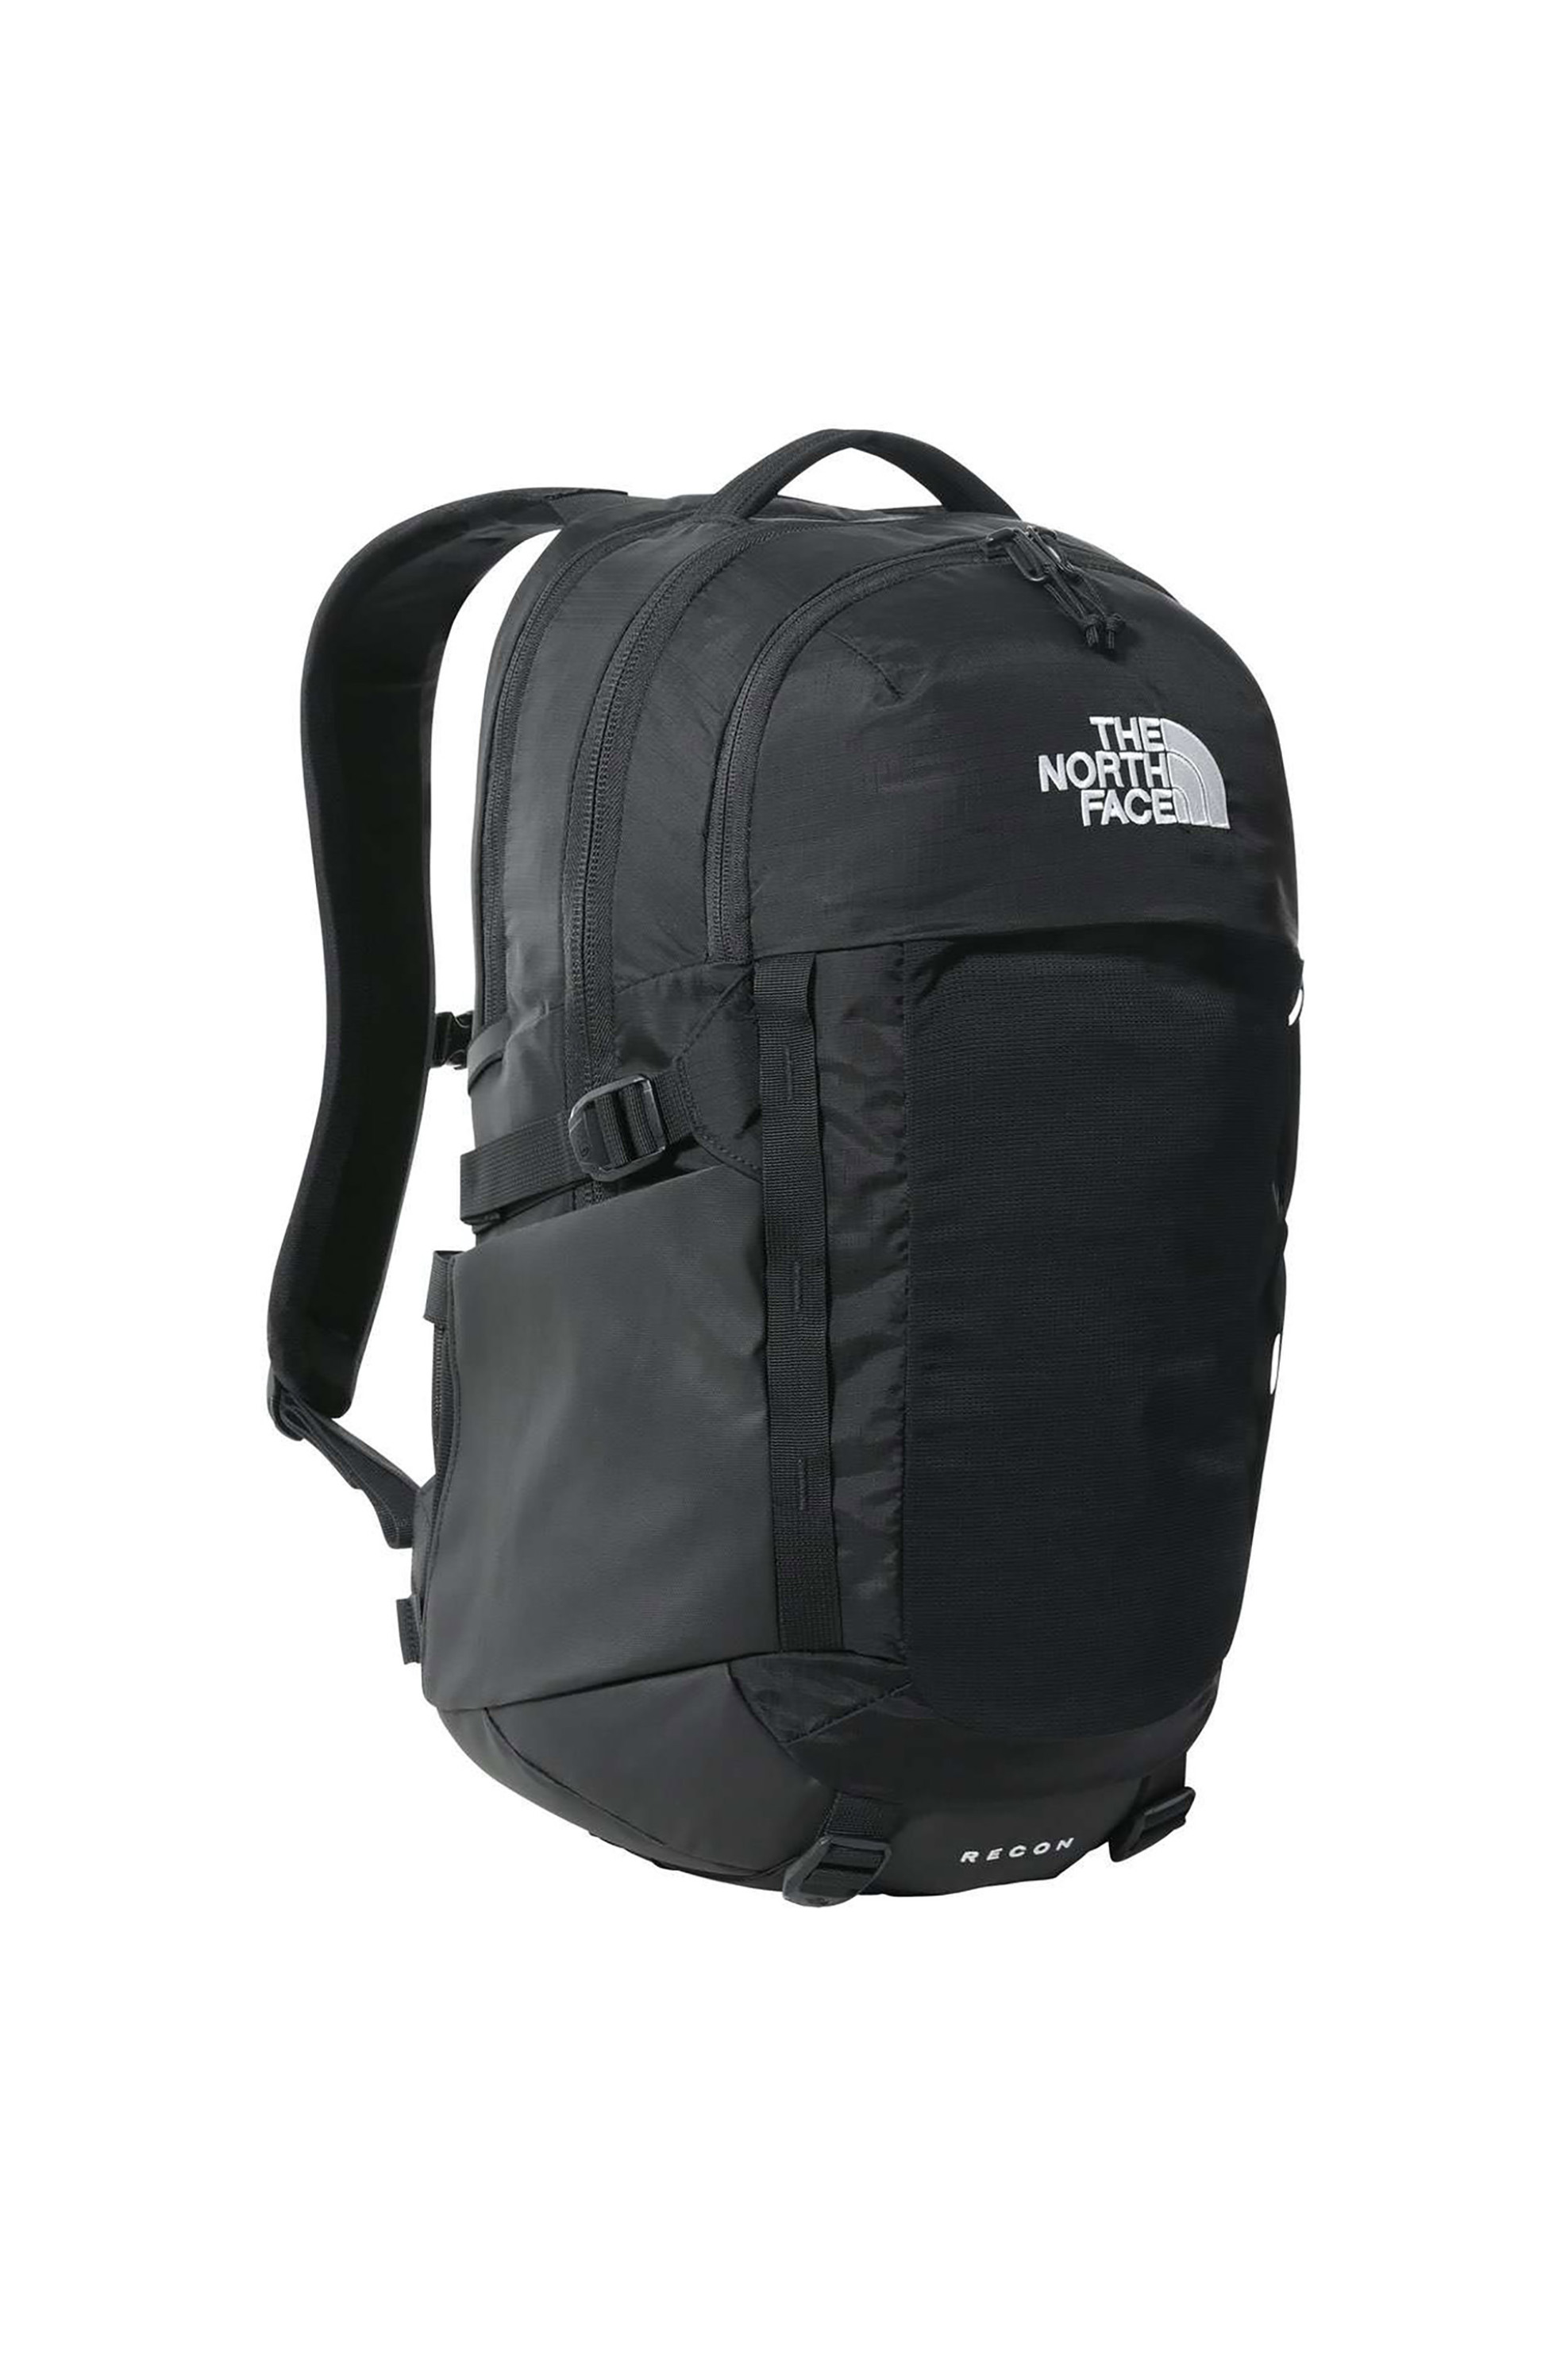 Ανδρική Μόδα > Ανδρικές Τσάντες > Ανδρικά Σακίδια & Backpacks The North Face unisex backpack μονόχρωμο με κεντημένο logo " Face Recon" - NF0A52SHKX71 Μαύρο